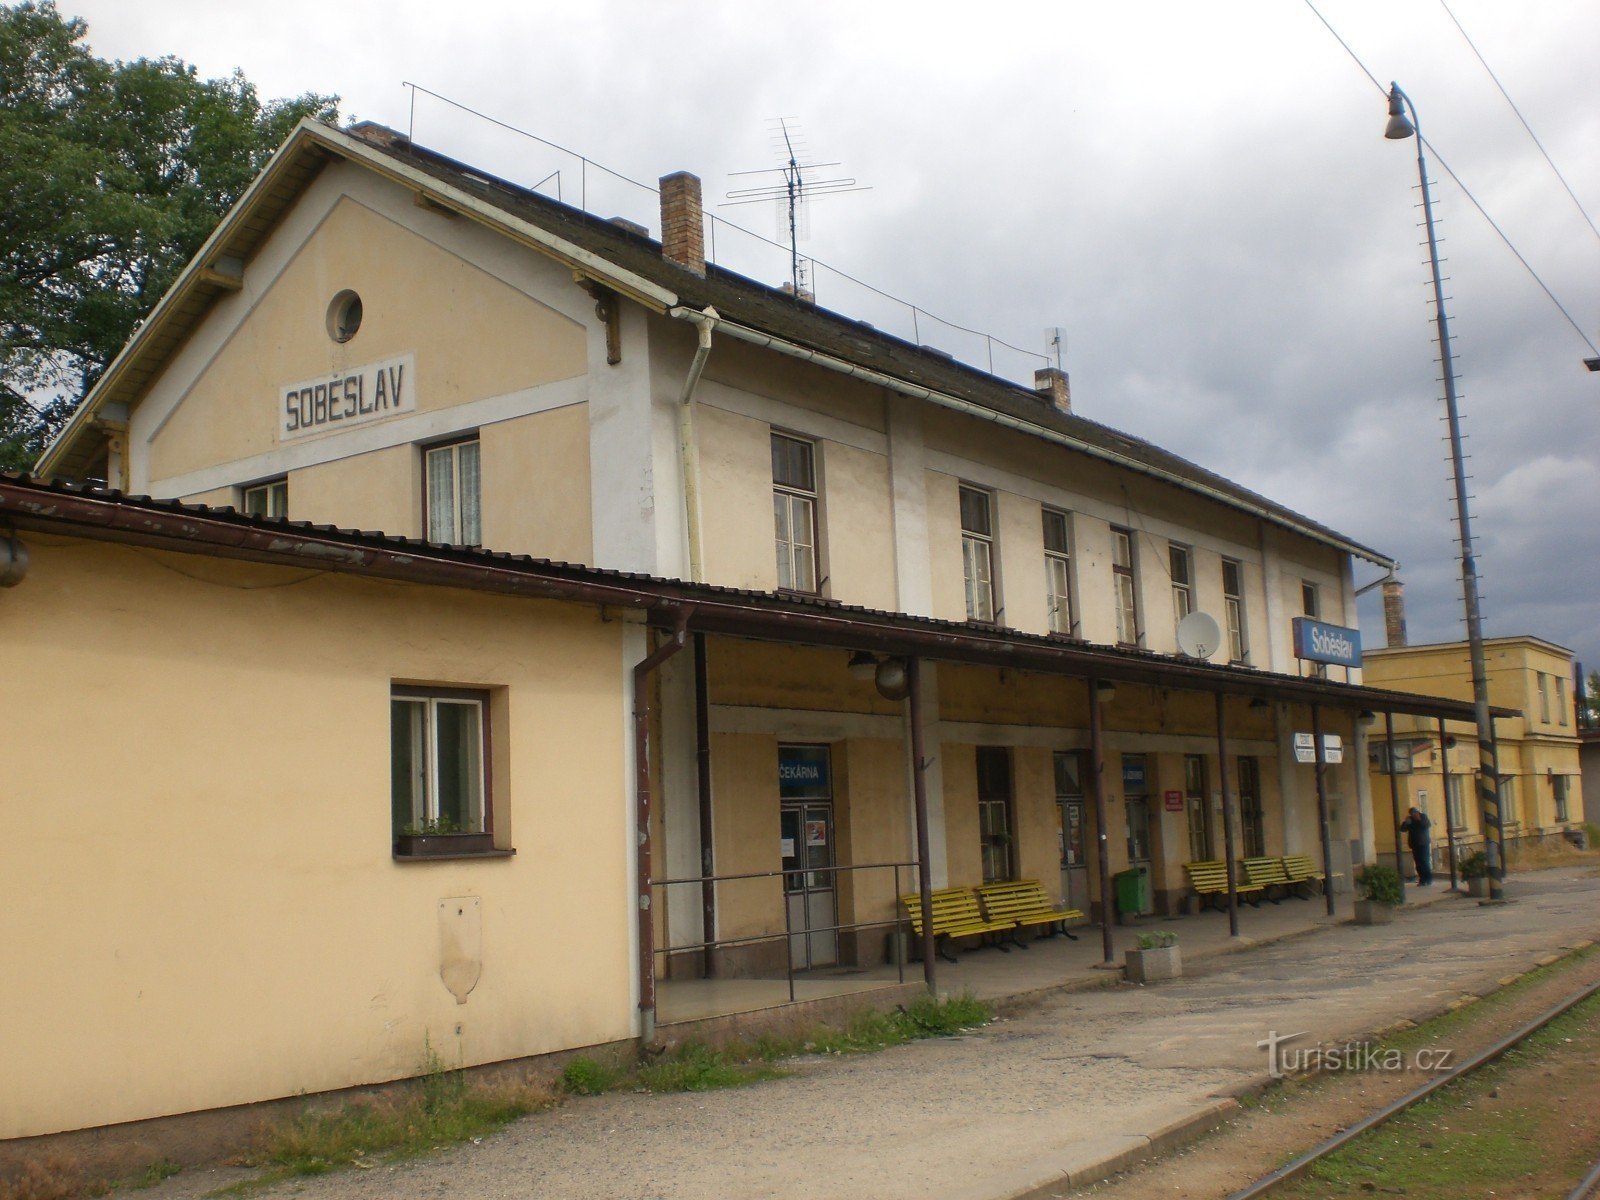 Собеслав - залізнична станція